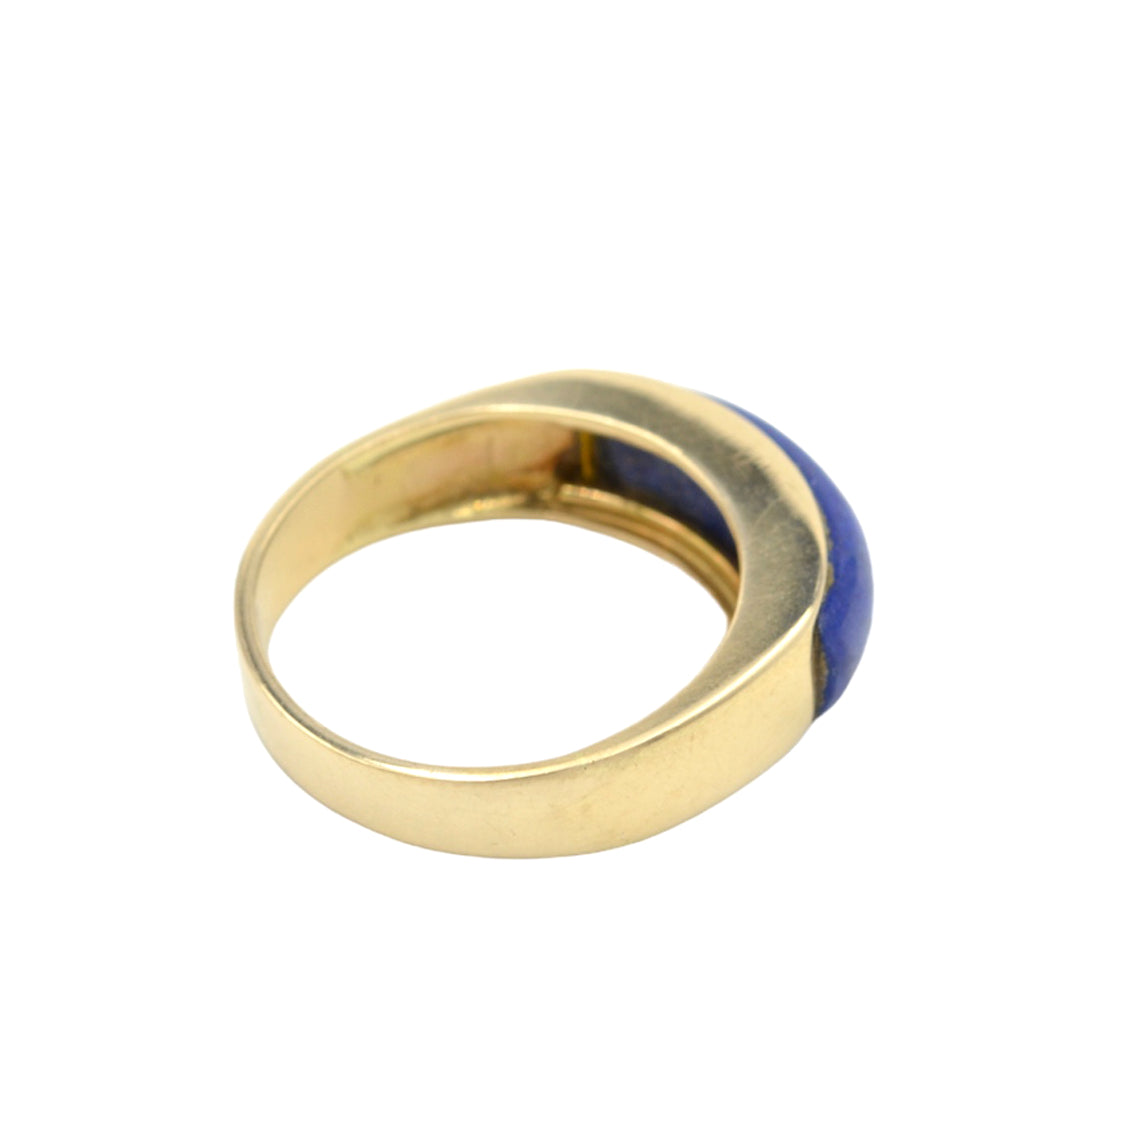 Vintage Lapis Lazuli and 14k Gold Saddle Ring